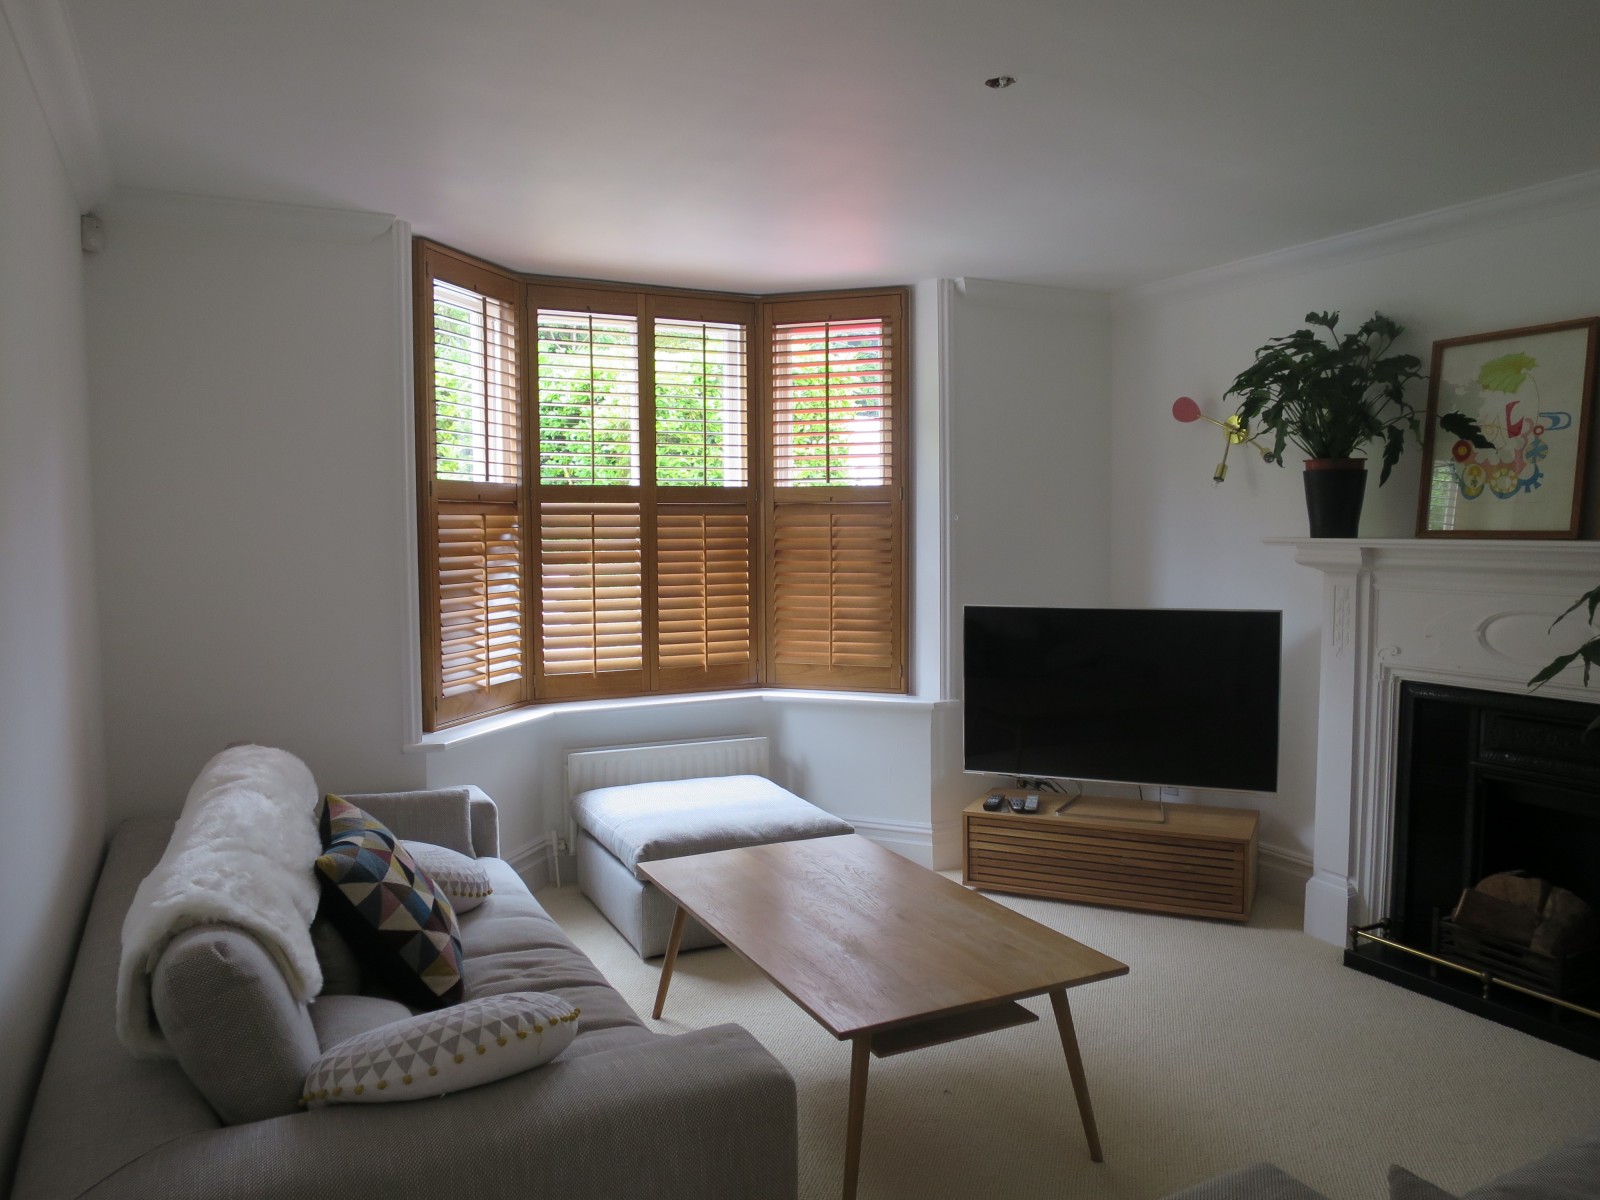 Vardagsrum med hårt trä burspråk.  Källa: shuttersouth.co.uk